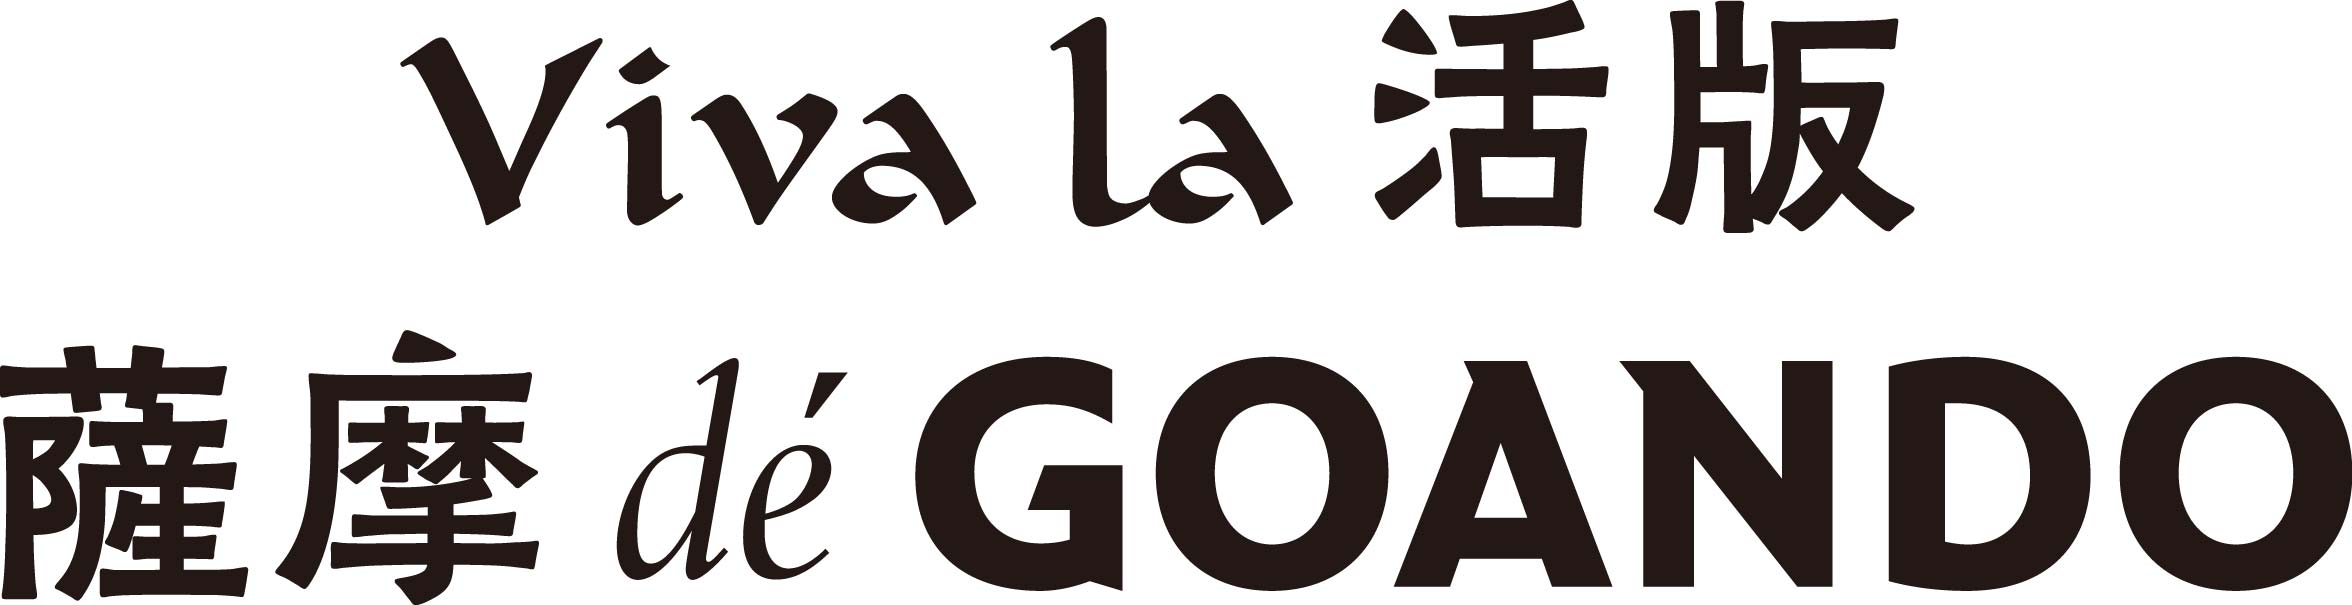 Goando-ロゴ1色